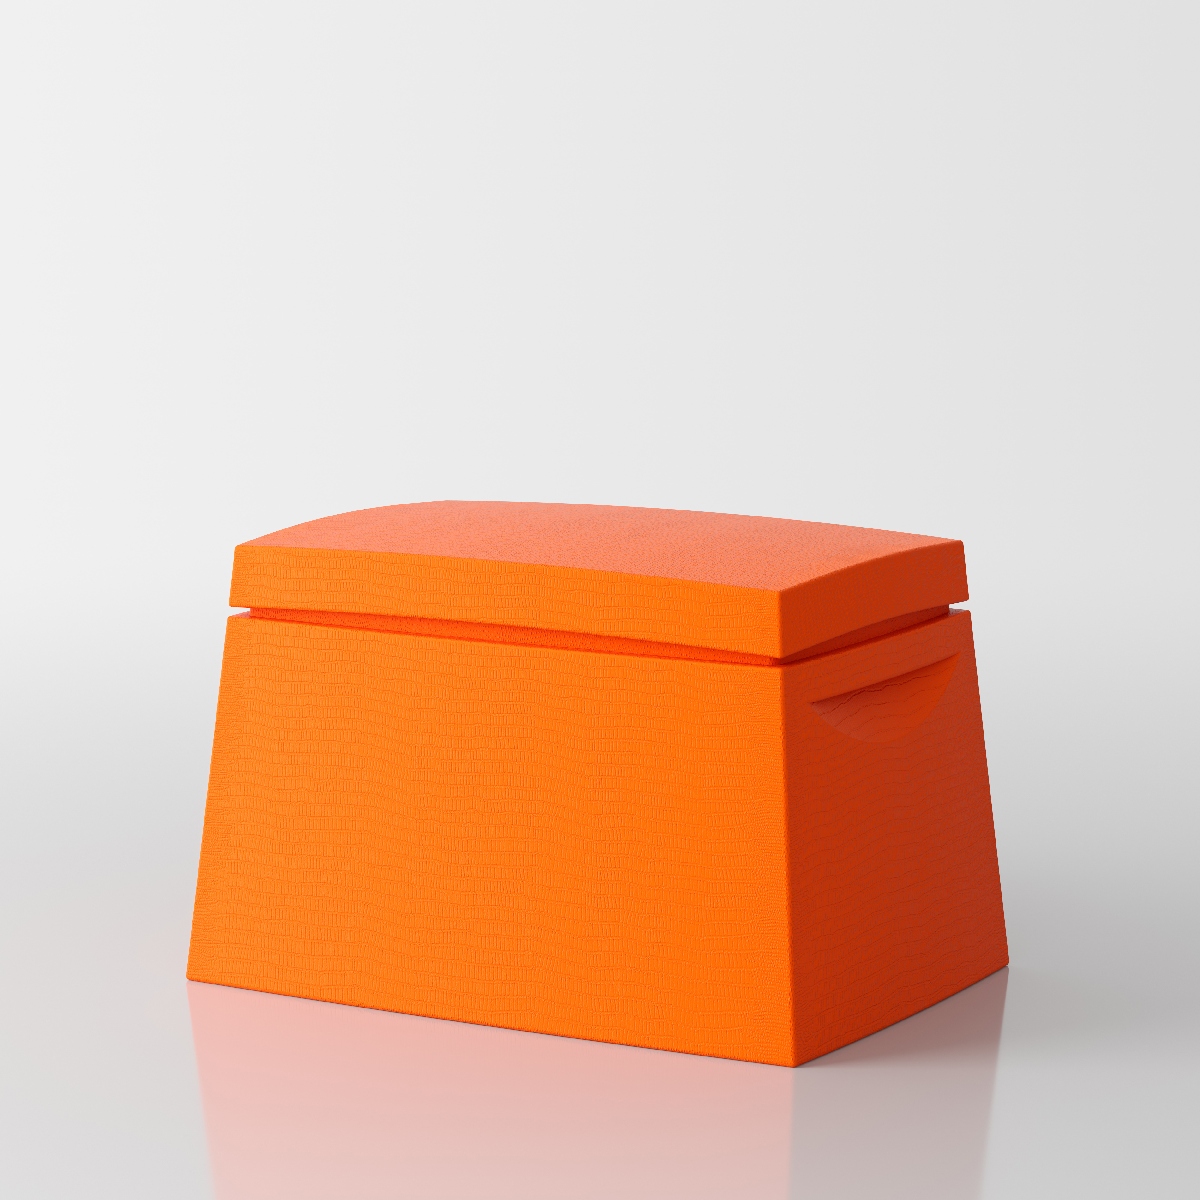 Big Box Multi-purpose trunk by Servetto - orange 1